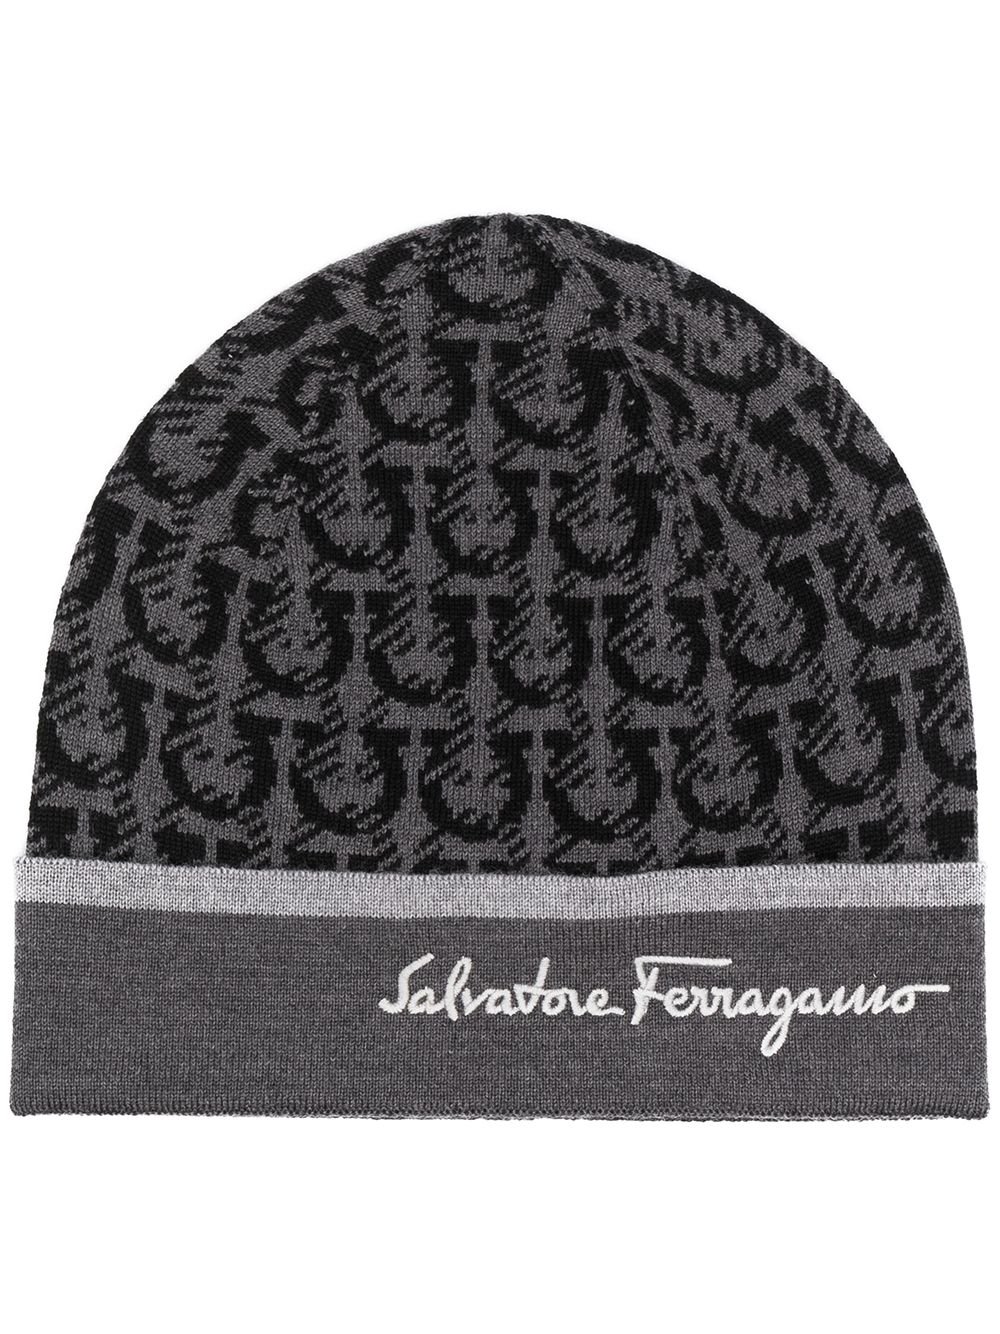 фото Salvatore ferragamo шапка бини вязки интарсия с логотипом